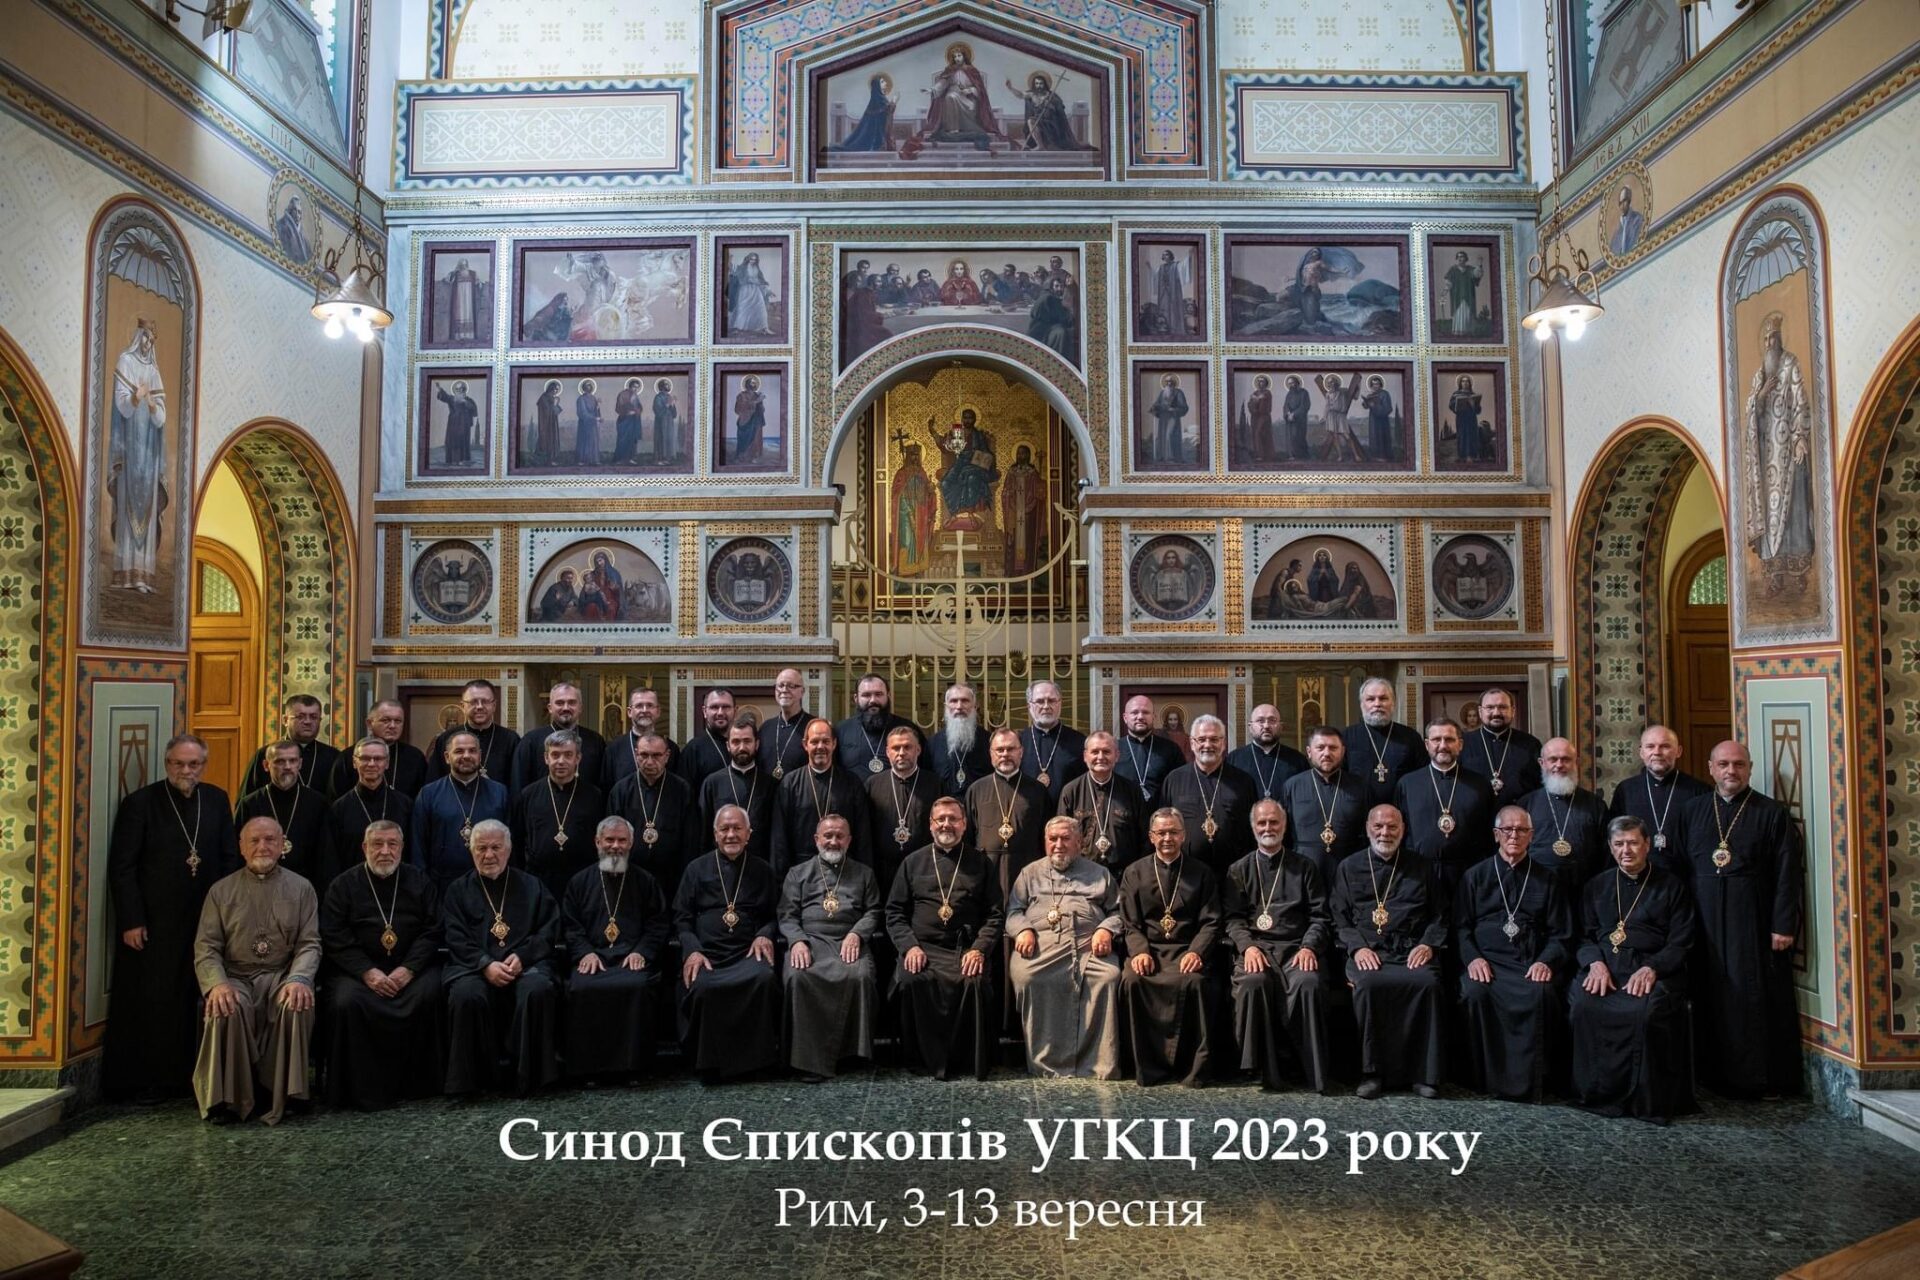 Постанови Синоду Єпископів УГКЦ 2023 року